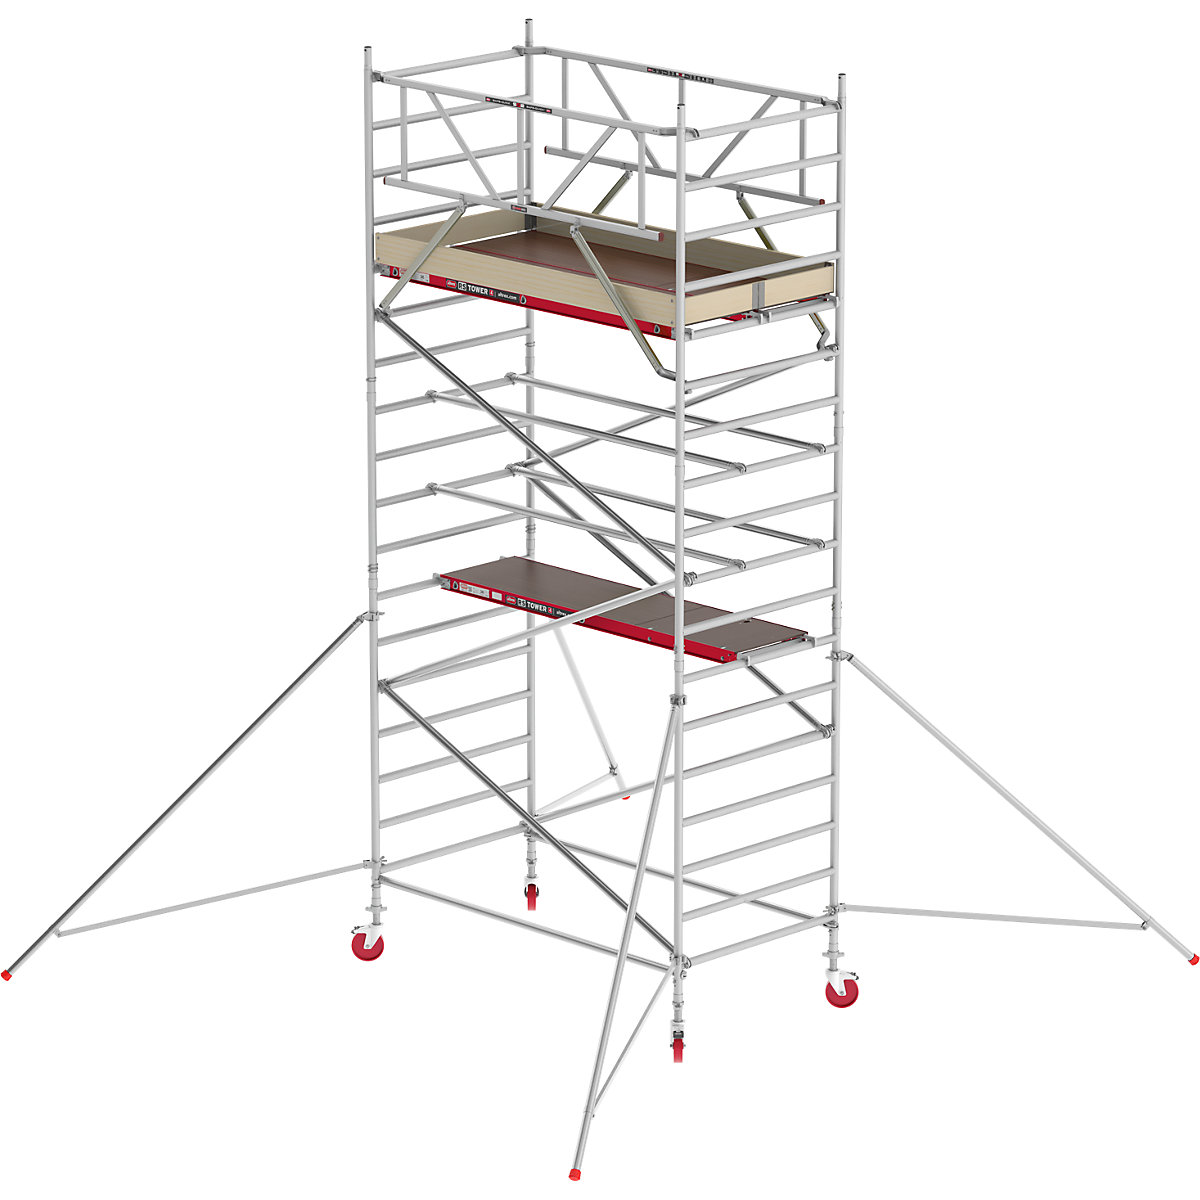 Trabattello mobile RS TOWER 42 largo – Altrex, piattaforma in legno, lunghezza 2,45 m, altezza di lavoro 6,20 m-3